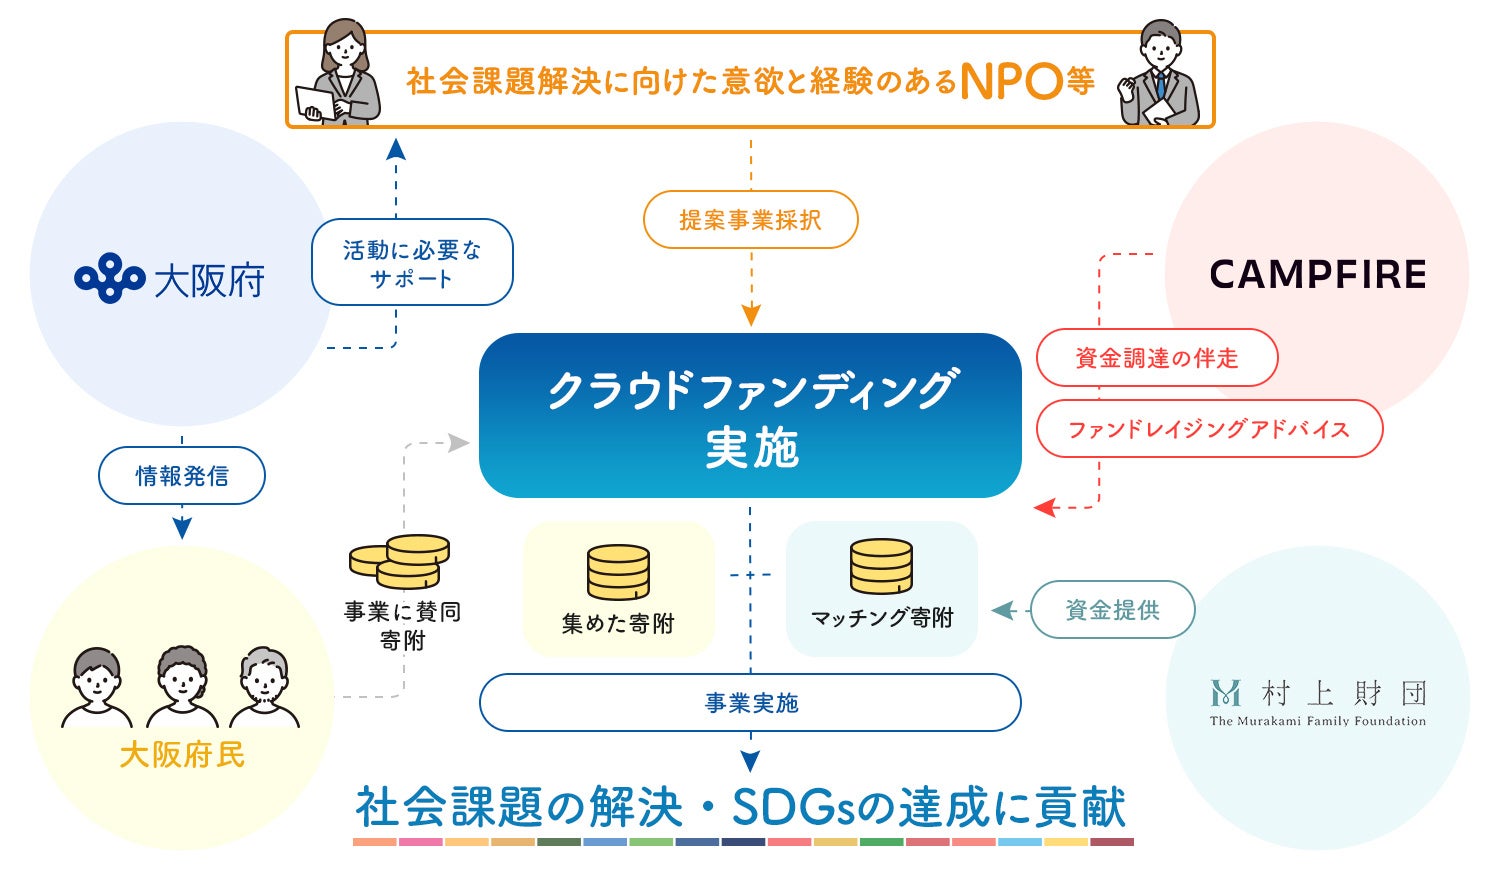 CAMPFIRE、大阪府と村上財団による「NPO等活動支援によるSDGsの達成に向けた社会課題解決事業」クラウドファンディングプログラムの公募を開始のサブ画像2